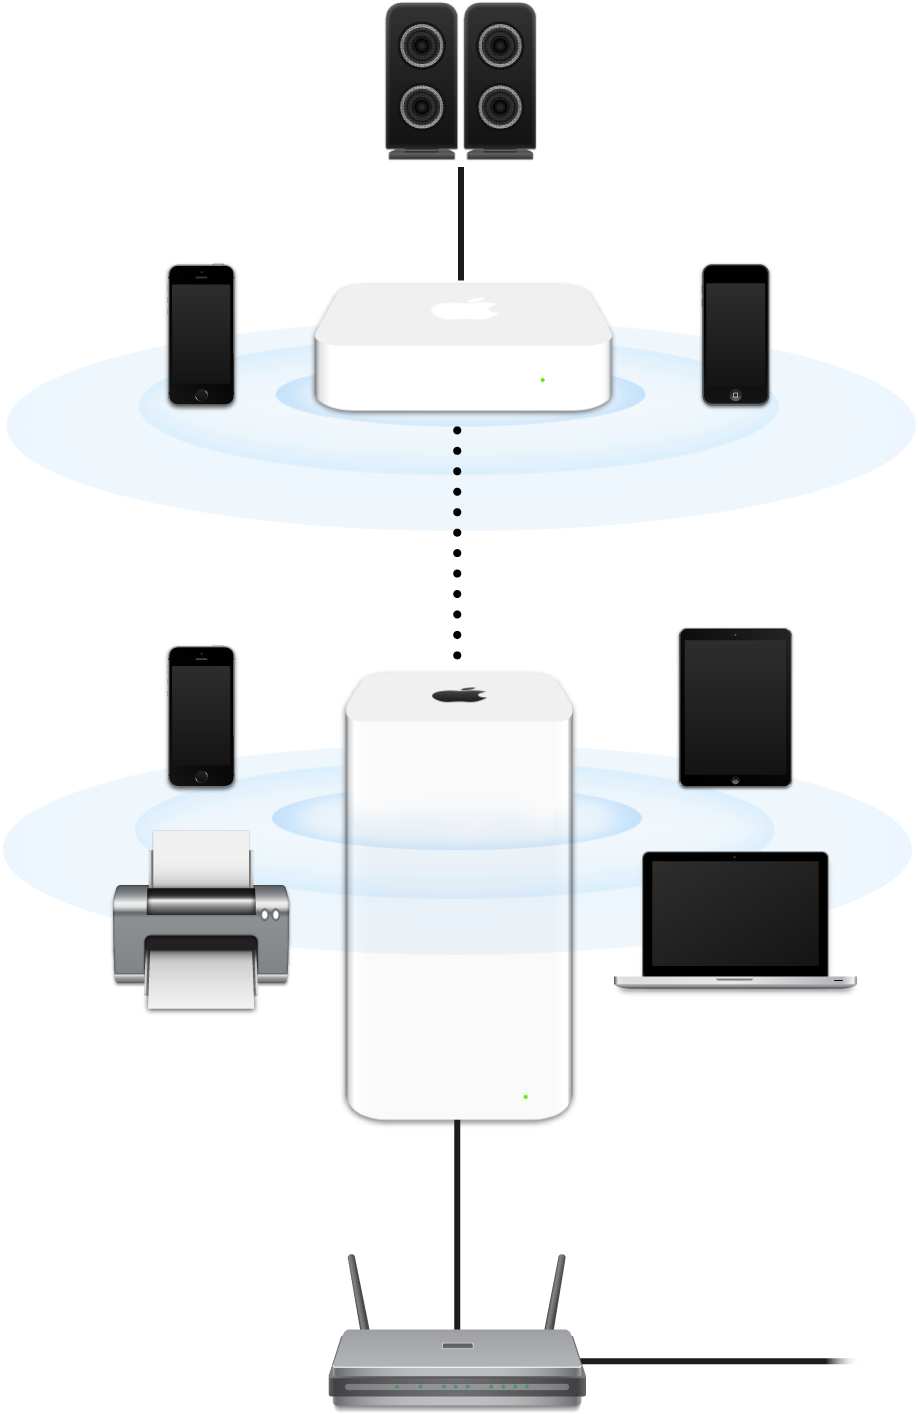 Un réseau étendu, comprenant des bornes AirPort Extreme et AirPort Express, connectées à un modem et transmettant des données à un ensemble d’appareils.